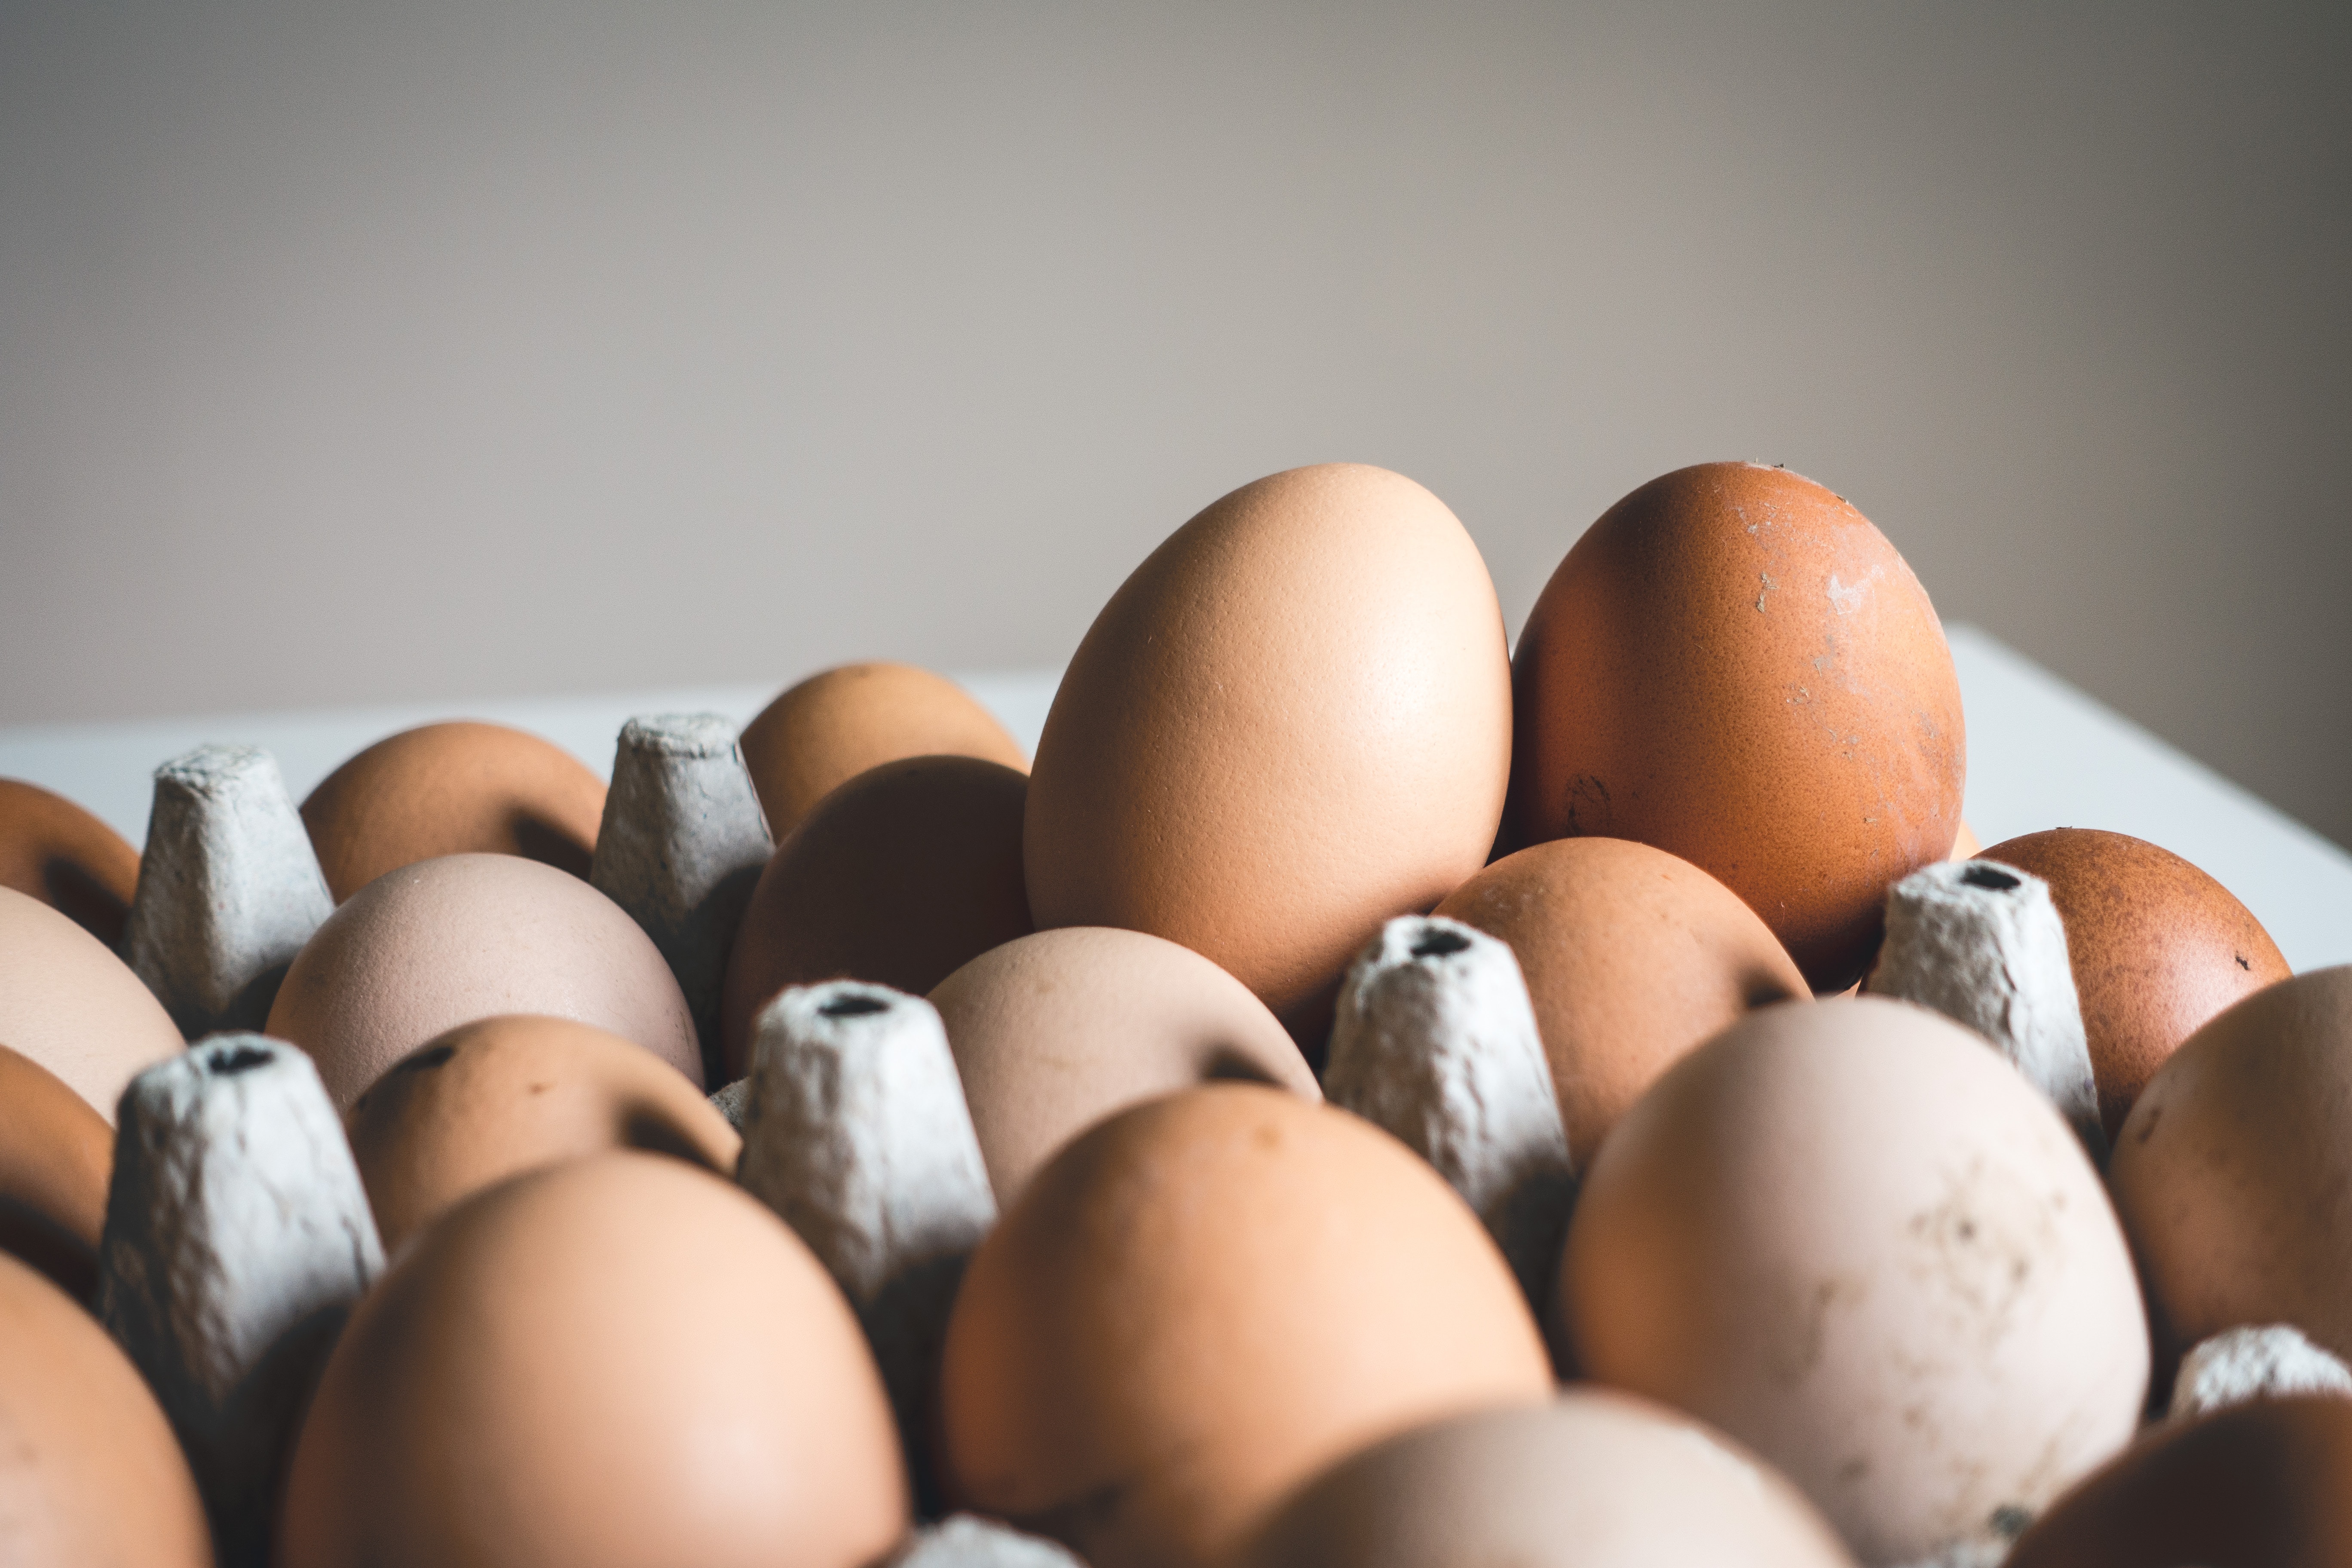 البيض مليء بالطاقة والبروتين (أونسبلاش)